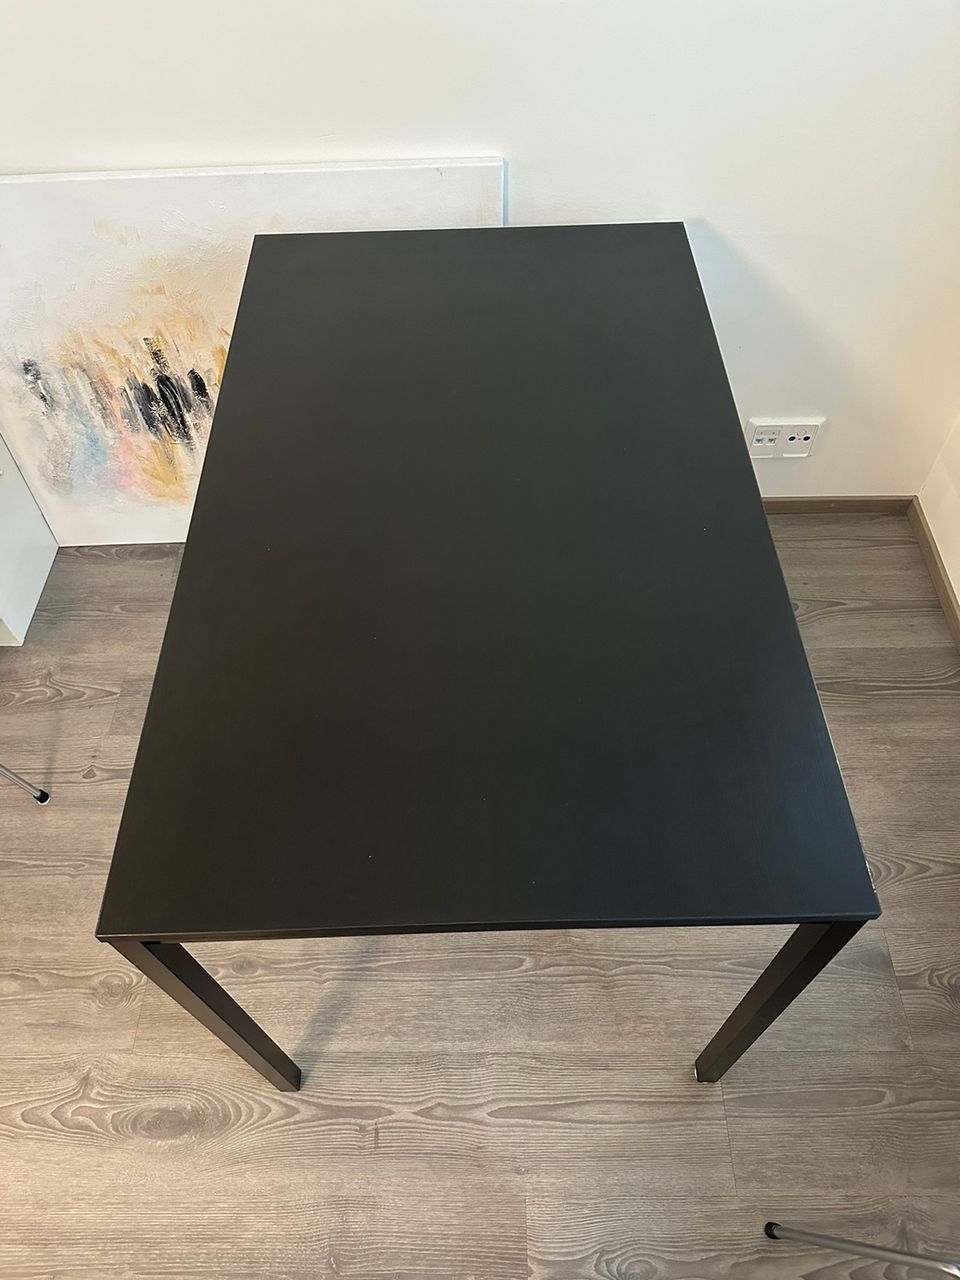 Ikean Tärendö pöytä